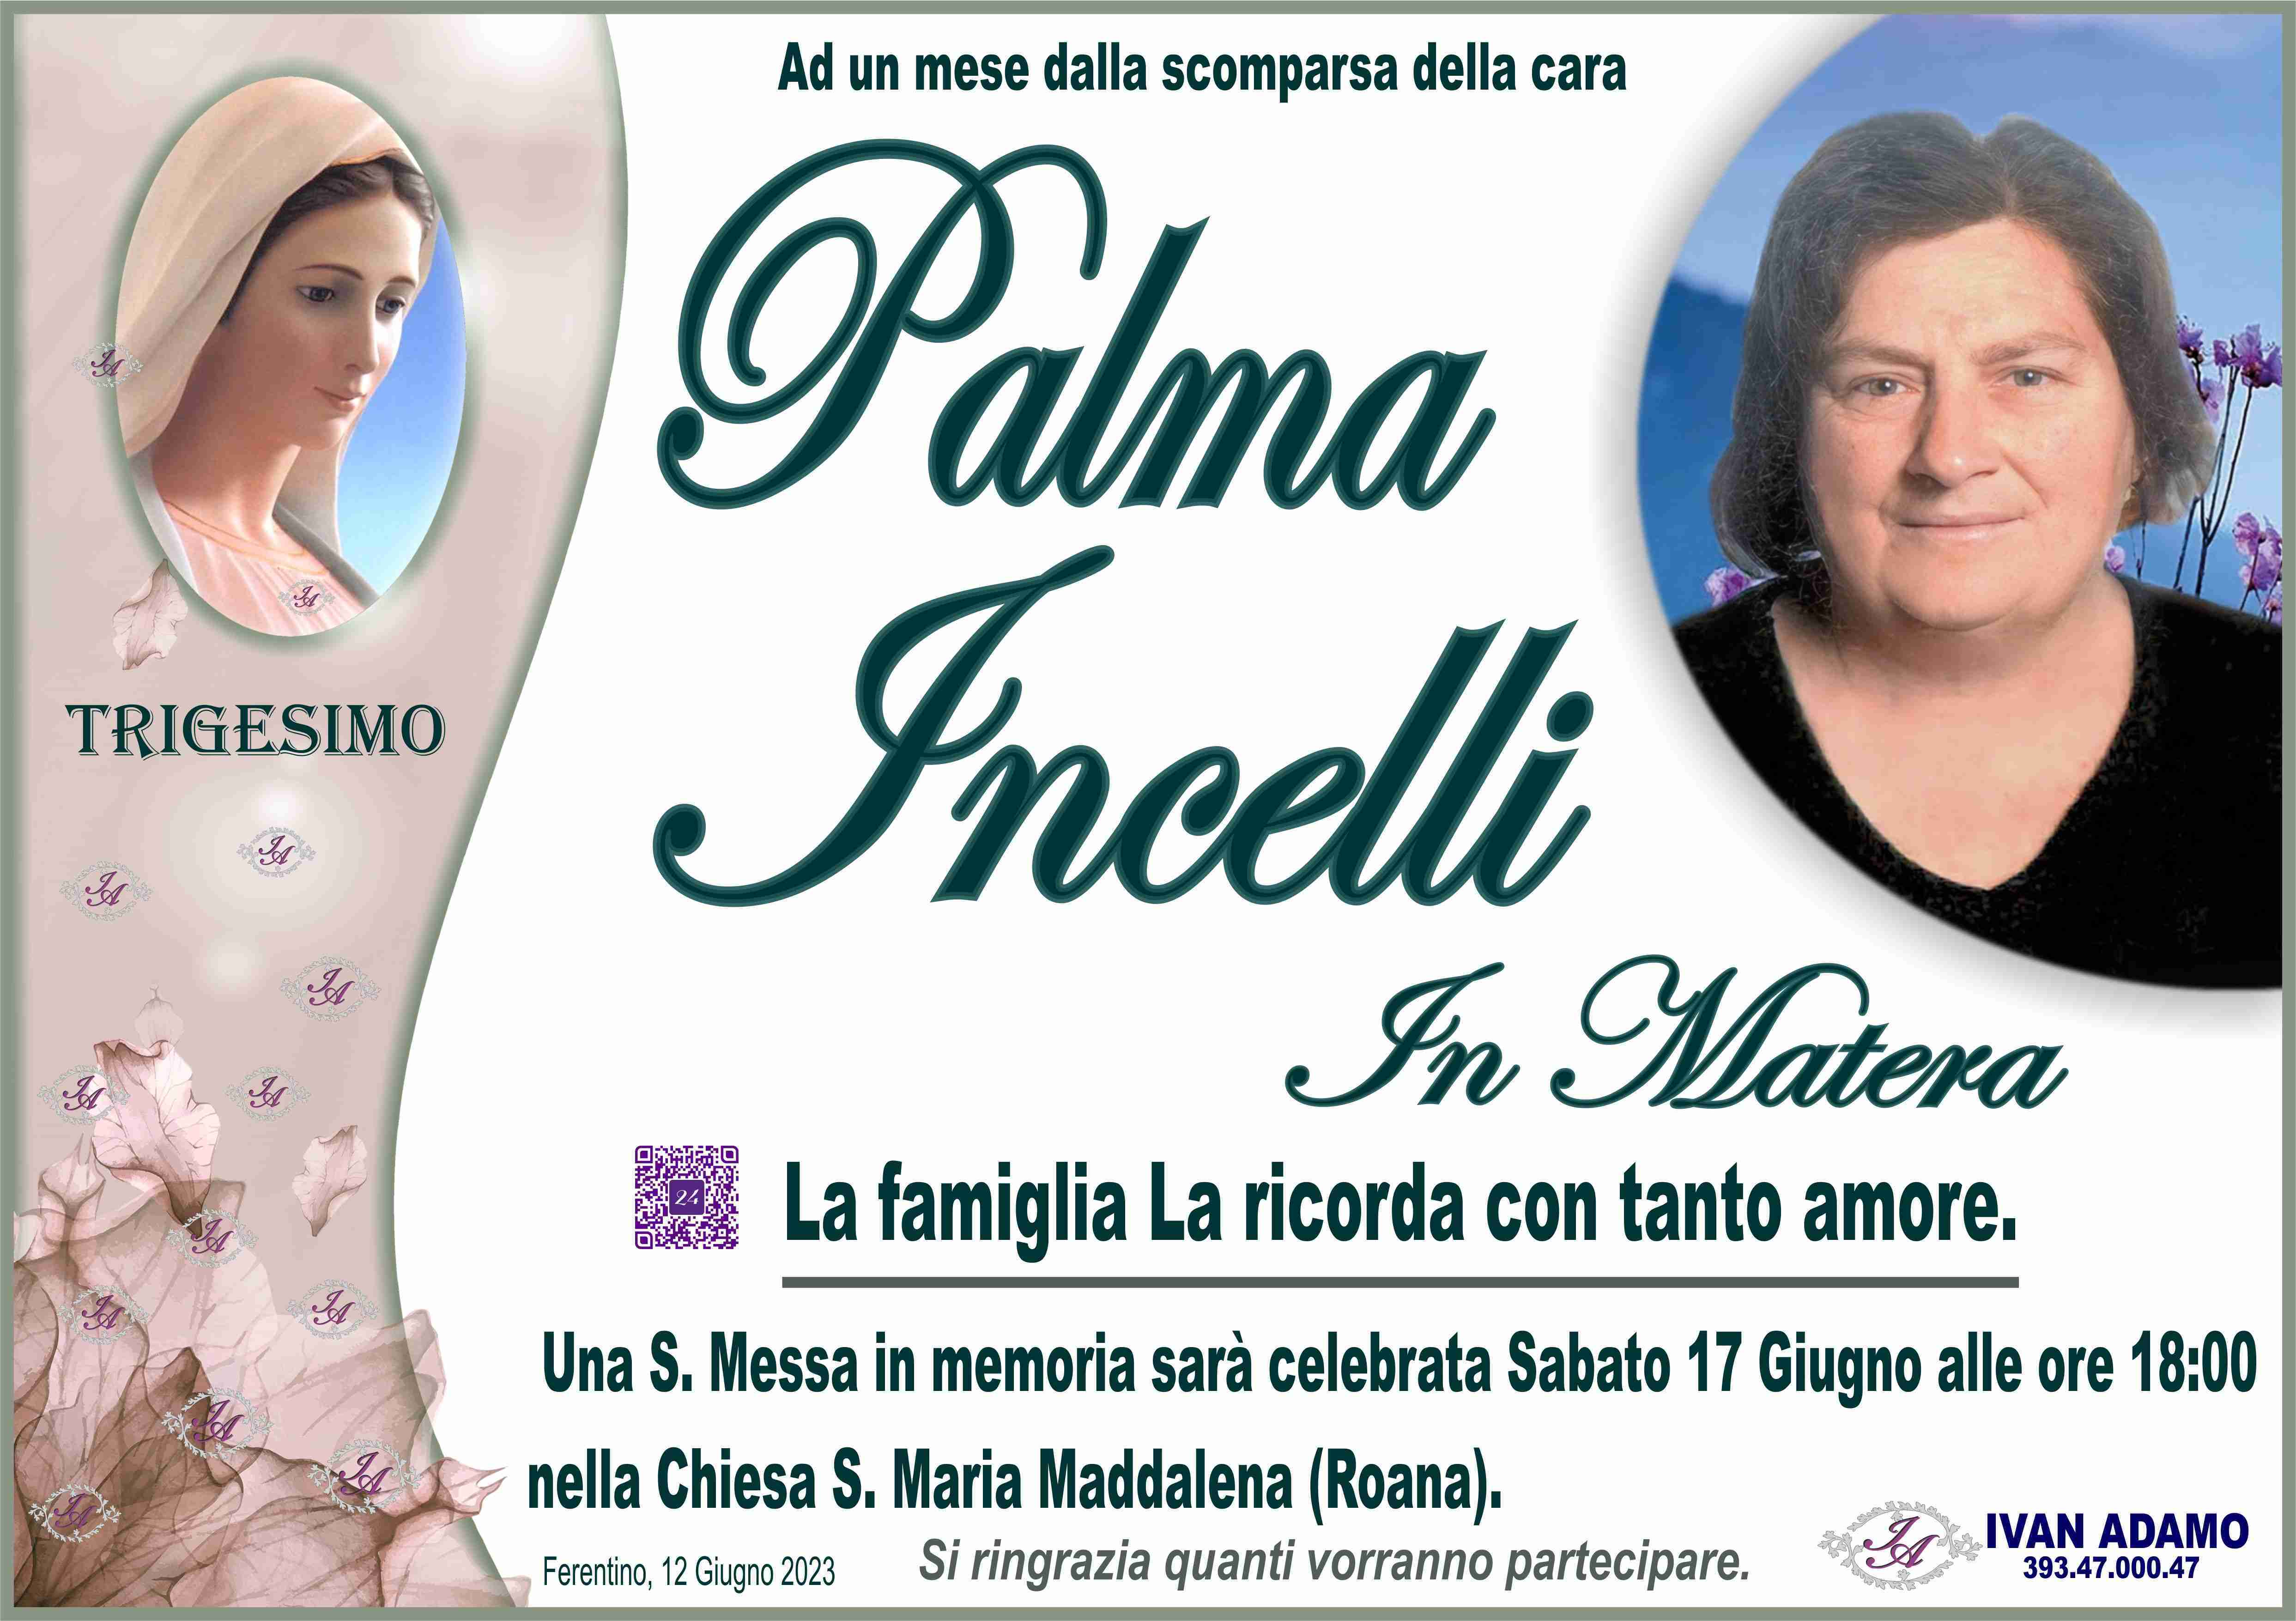 Palma Incelli